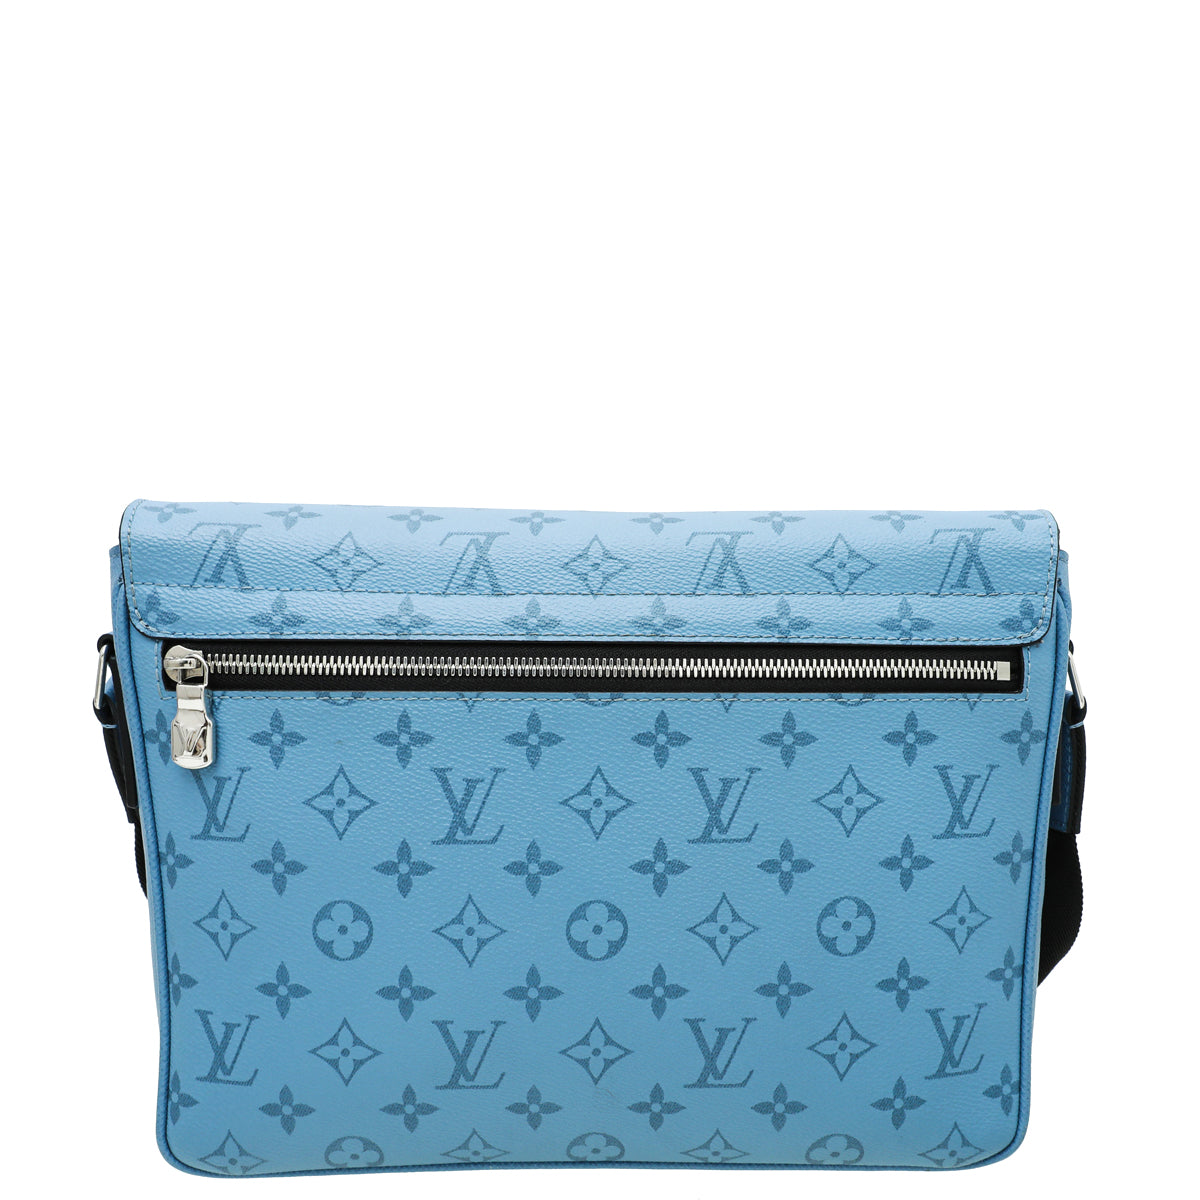 Alpha messenger cloth bag Louis Vuitton Blue in Cloth - 8010804